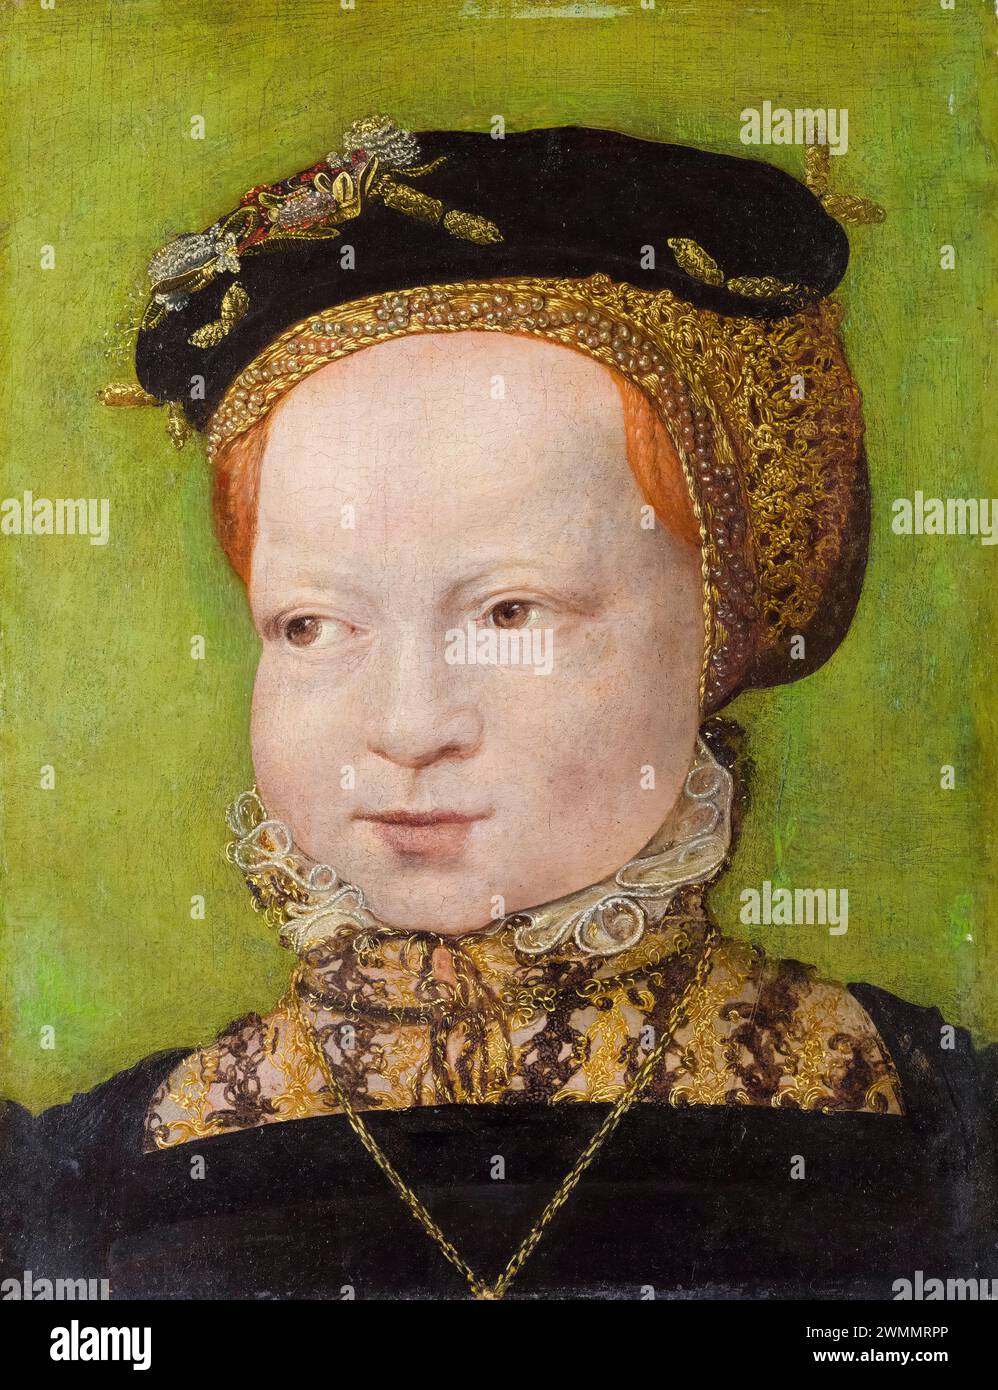 Jakob Seisenegger, Ritratto di una ragazza, pittura ad olio su legno, 1545-1550 Foto Stock